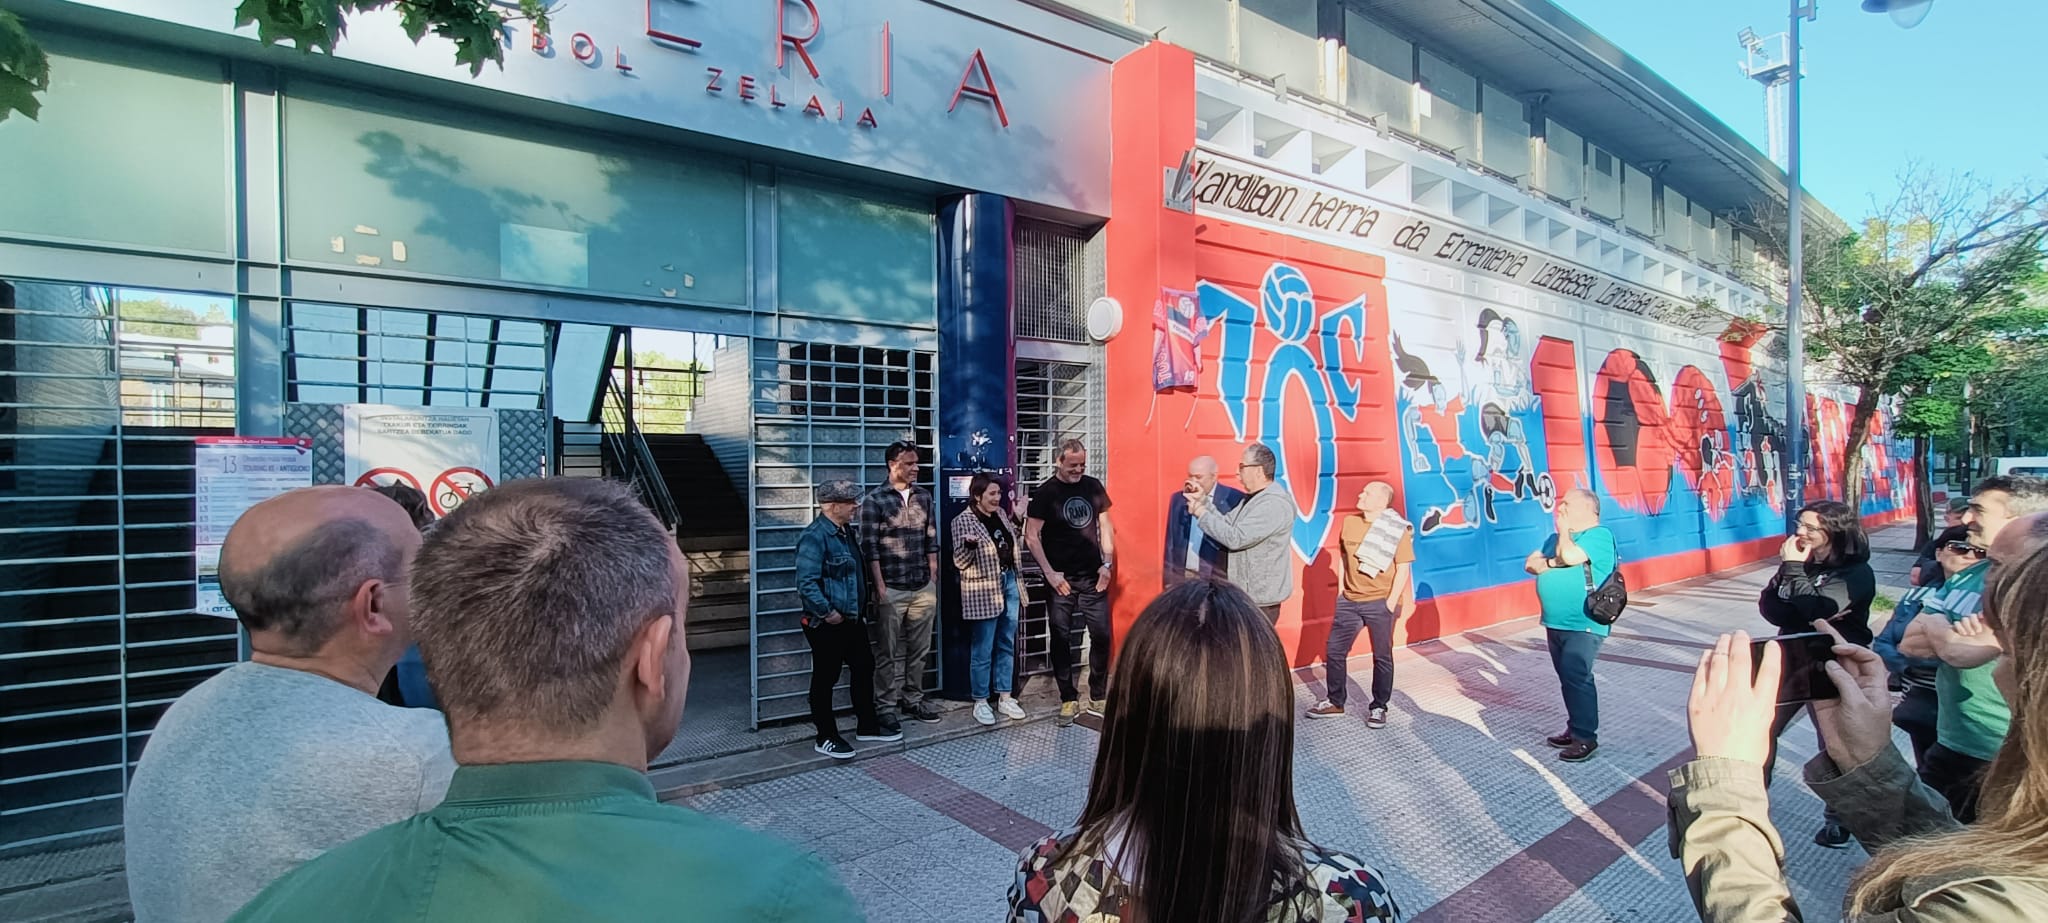 La inauguración del mural del campo de fútbol de Fanderia cierra el centenario del Touring KE